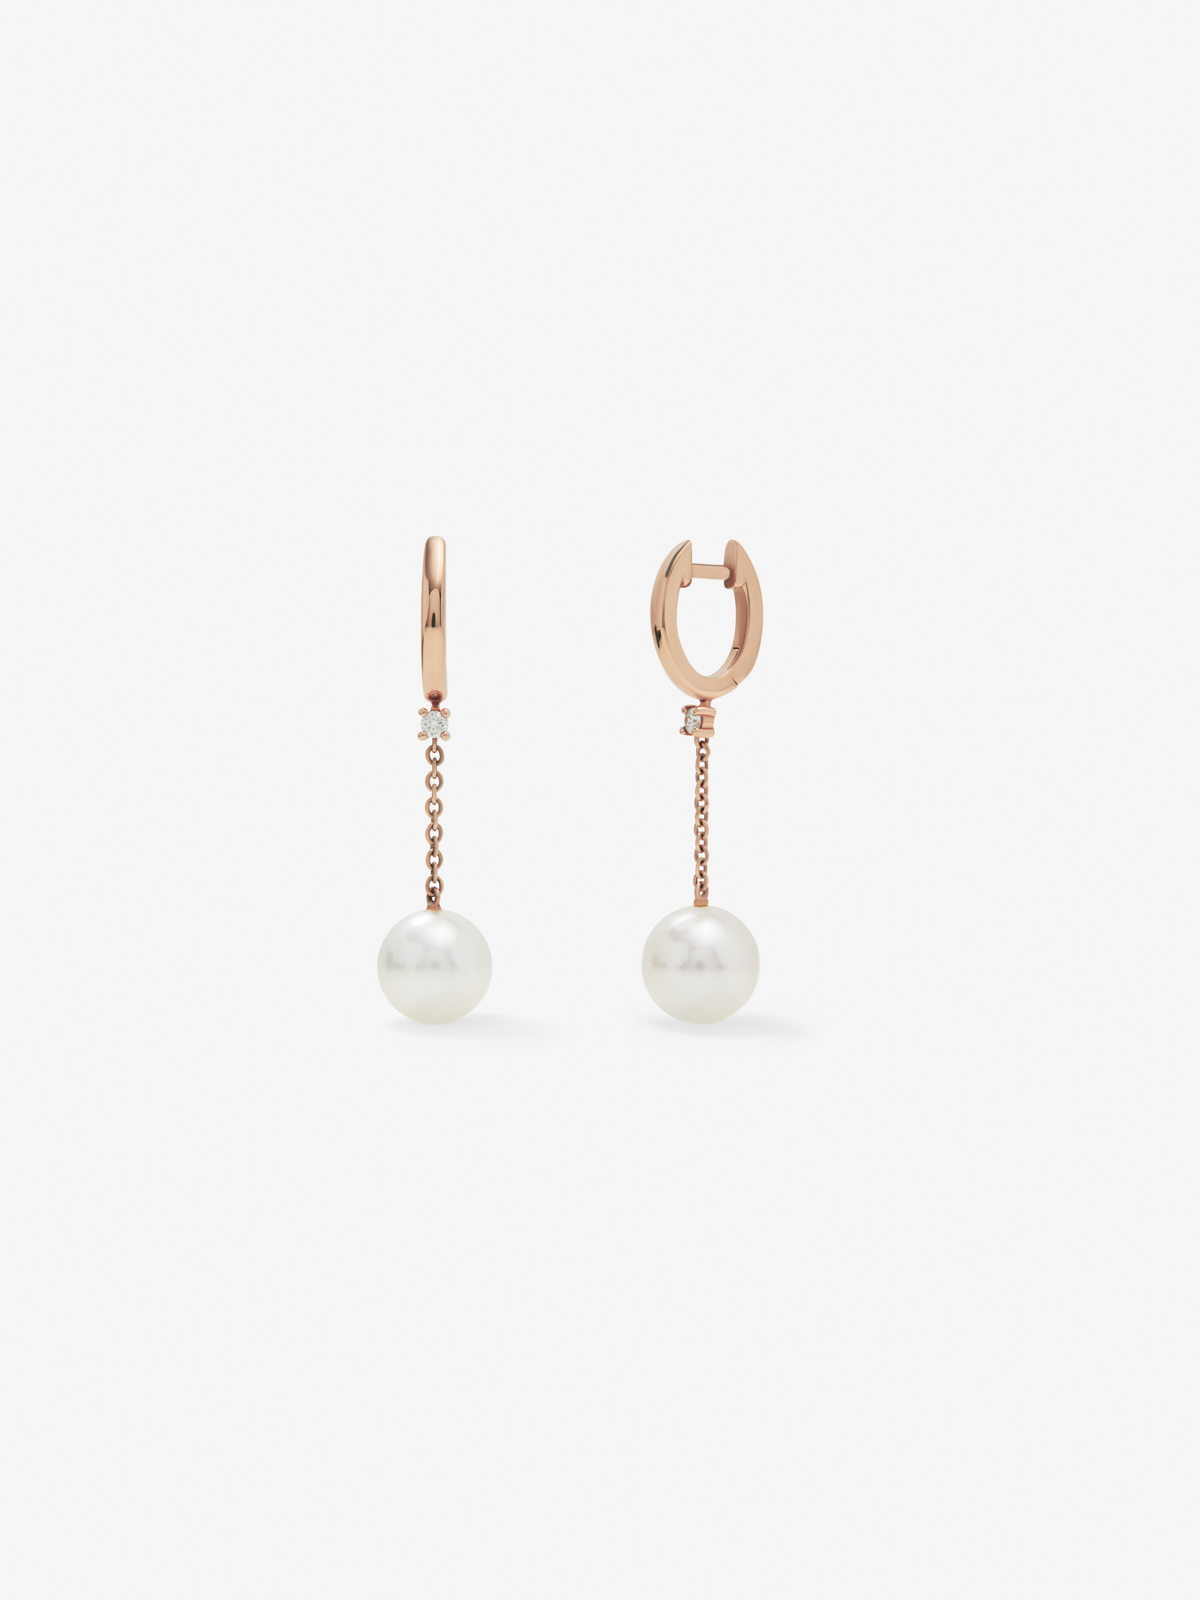 Pendientes de aro y cadena de oro rosa de 18K con diamantes blancos en talla brillante de 0,07 cts y perlas akoya 8,5 mm